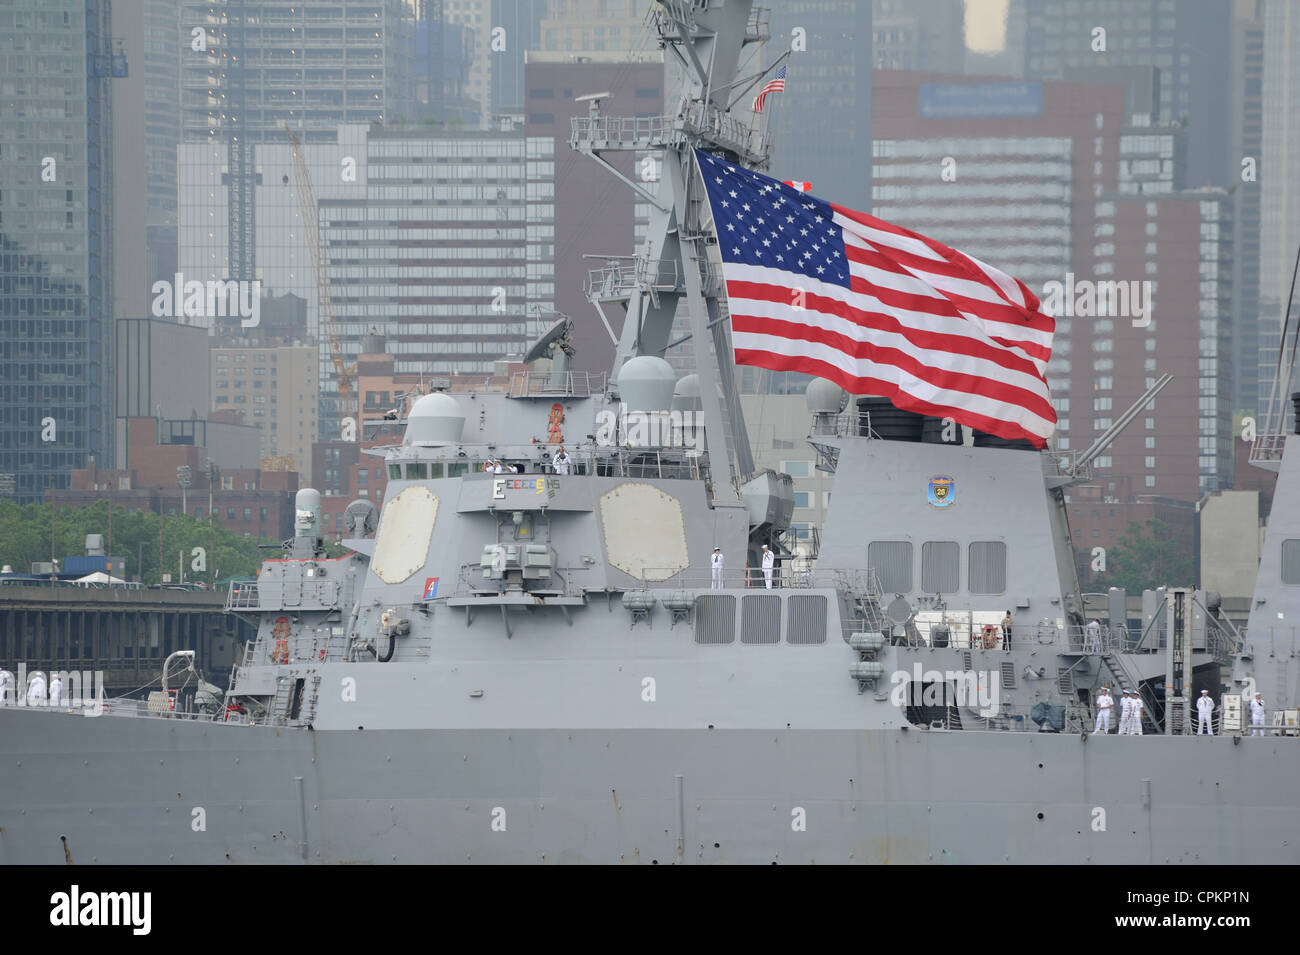 La USS Donald Cook, un missile destroyer NEGLI STATI UNITI Marina, ha preso parte alla OpSail/settimana della flotta parade sul fiume Hudson. Foto Stock